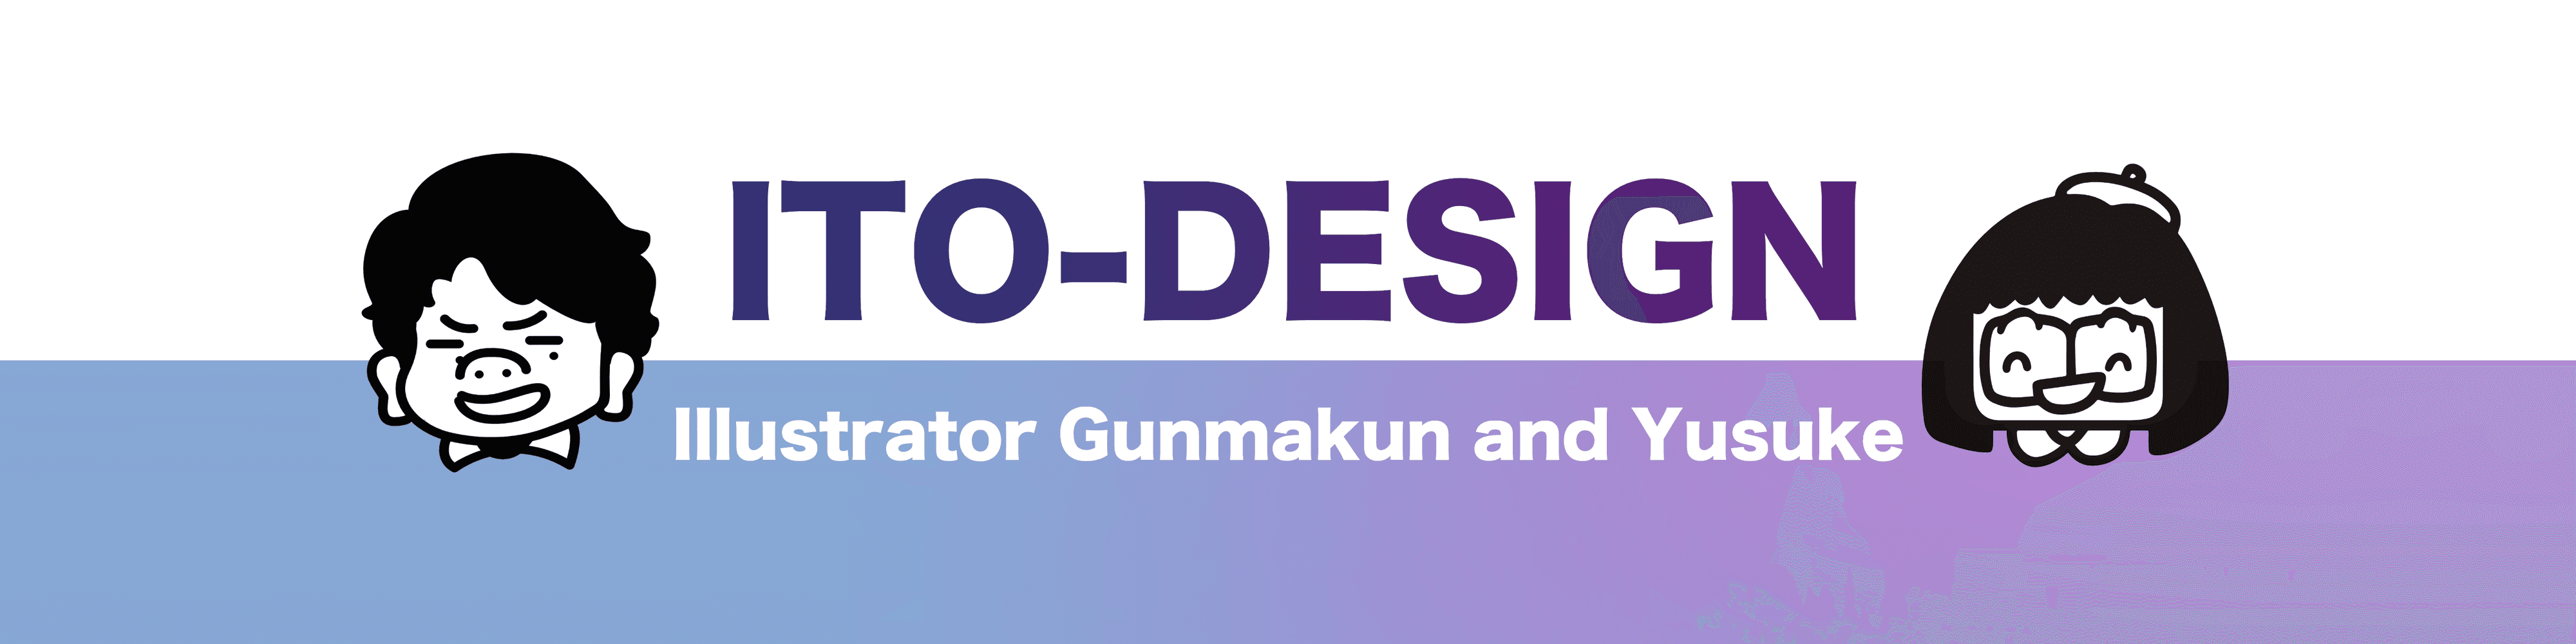 ito-design banner